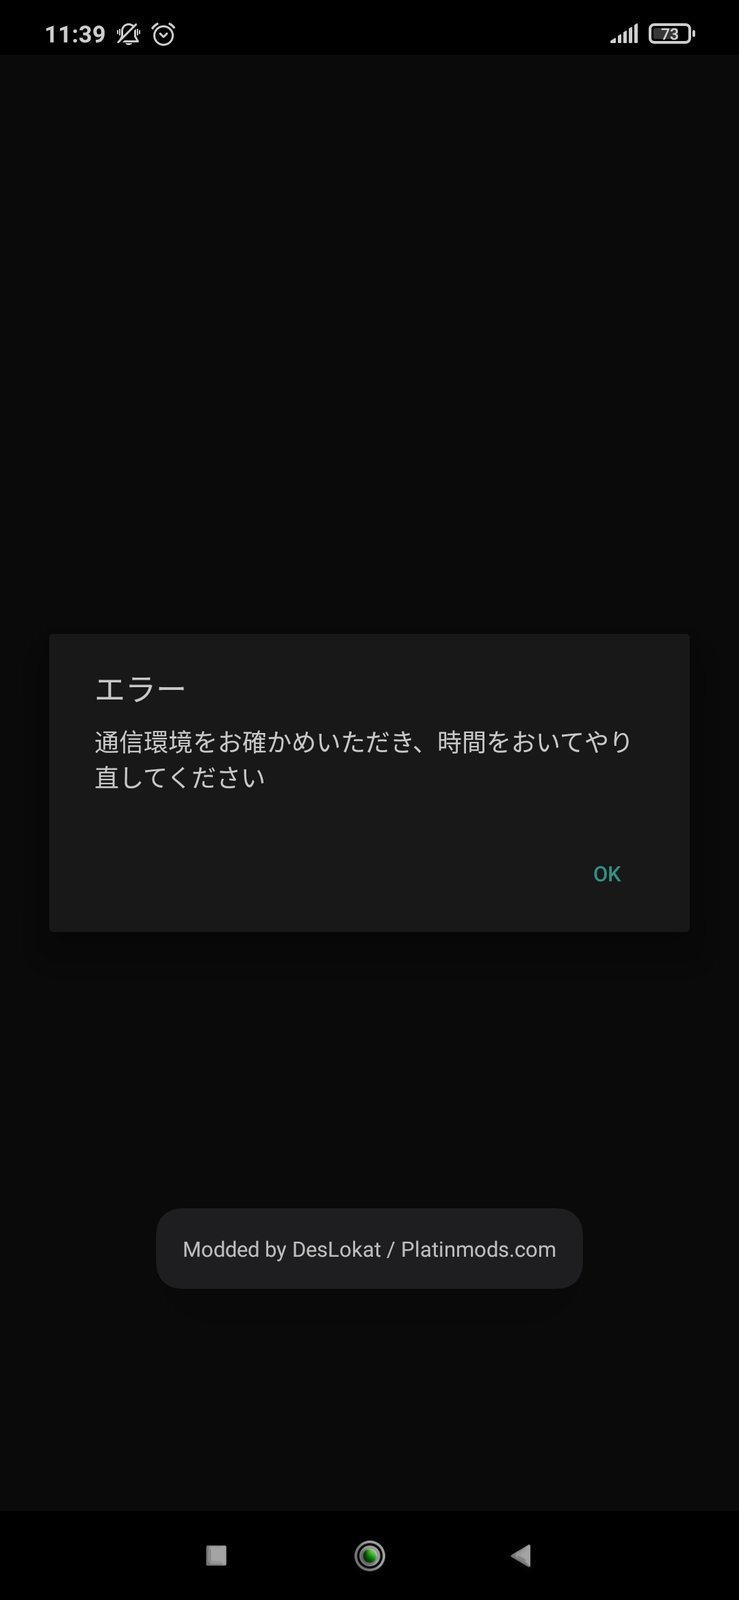 Screenshot_2021-09-09-11-39-49-687_jp.co.fanzagames.otonanumpl_x_a.jpg